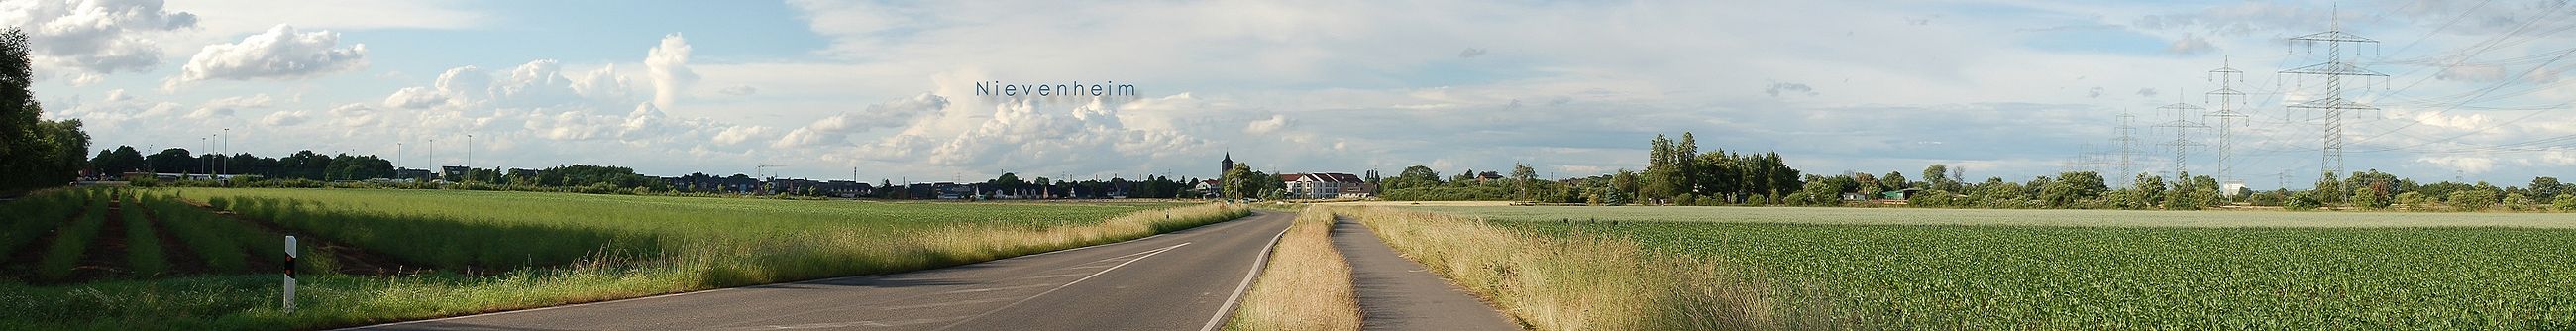 Ansicht auf Nievenheim